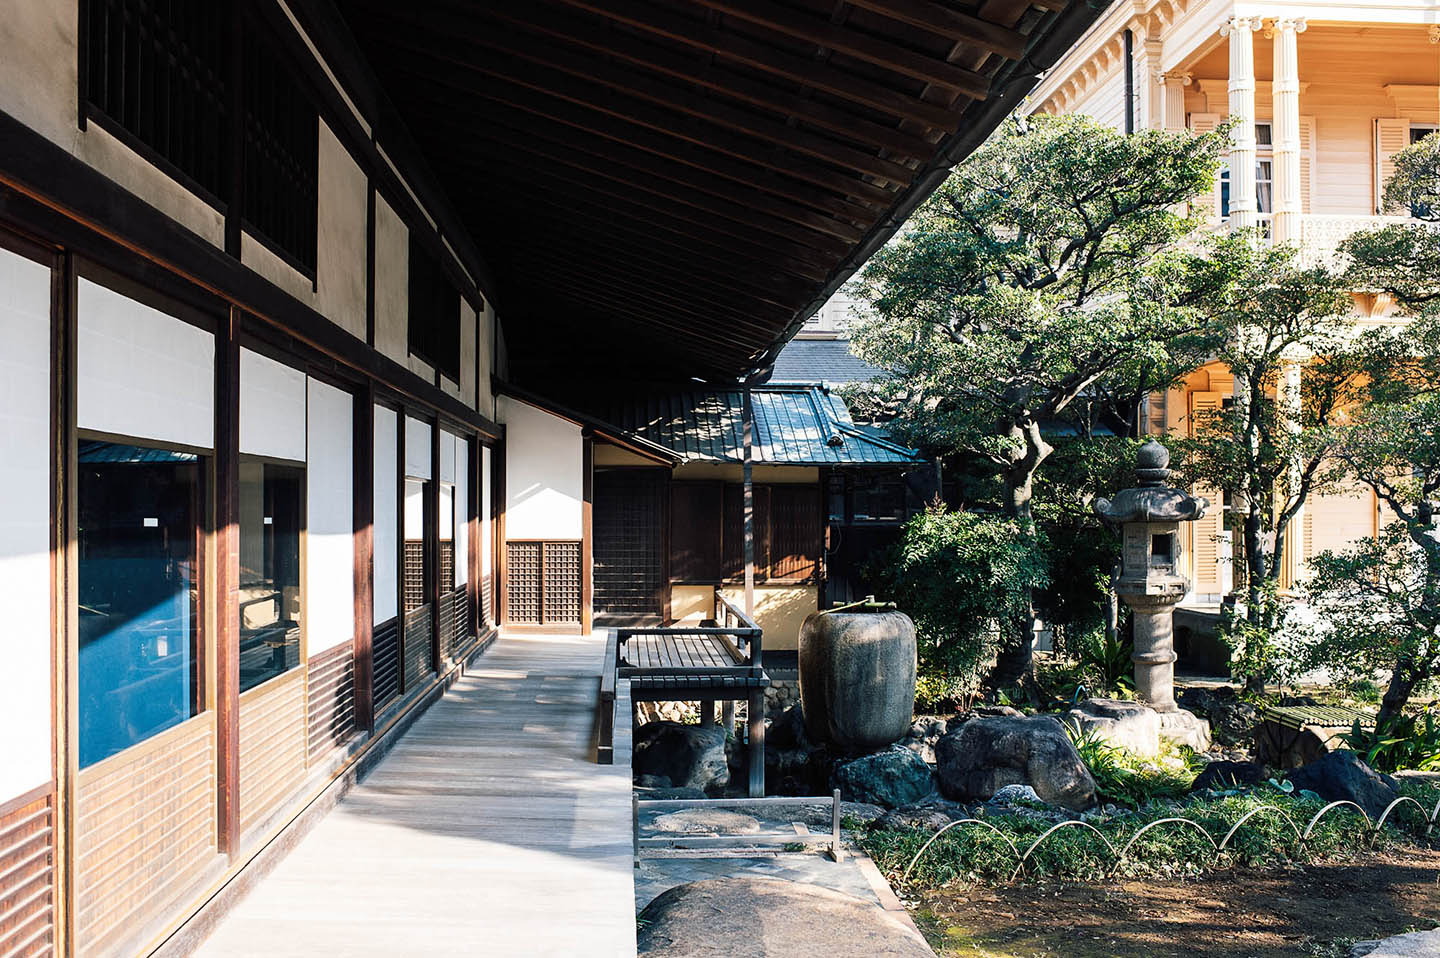 【Edo Tokyo Rethink】Kyū-Iwasaki-tei Gardens: Exhibition Design for Unique Venue